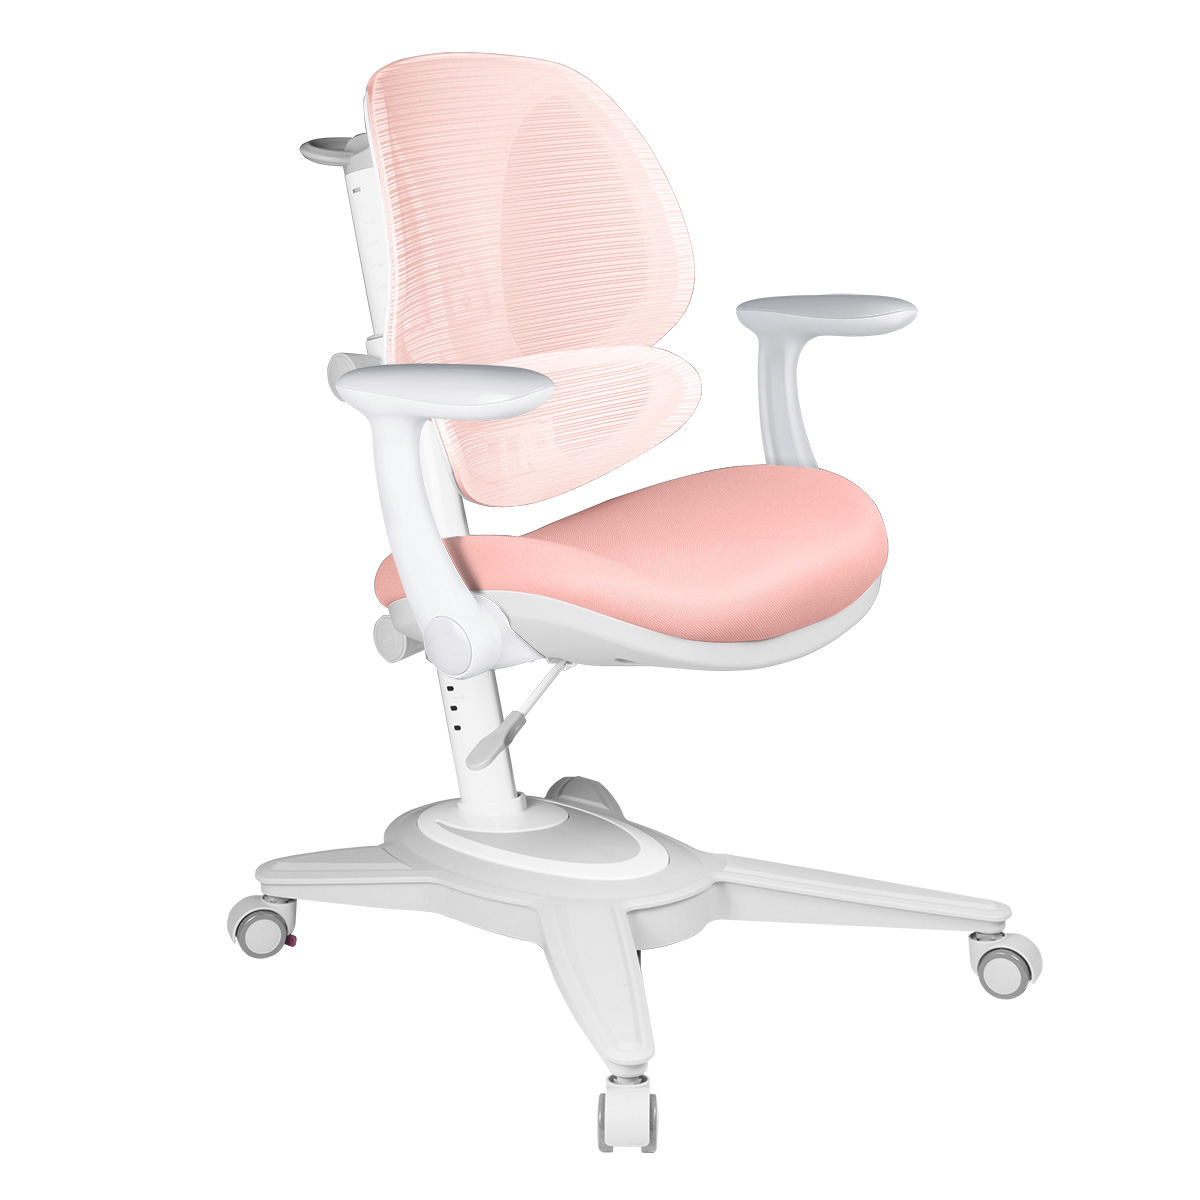 Детское кресло Anatomica Funken с подлокотниками, розовый детское кресло anatomica armata с подлокотниками серый